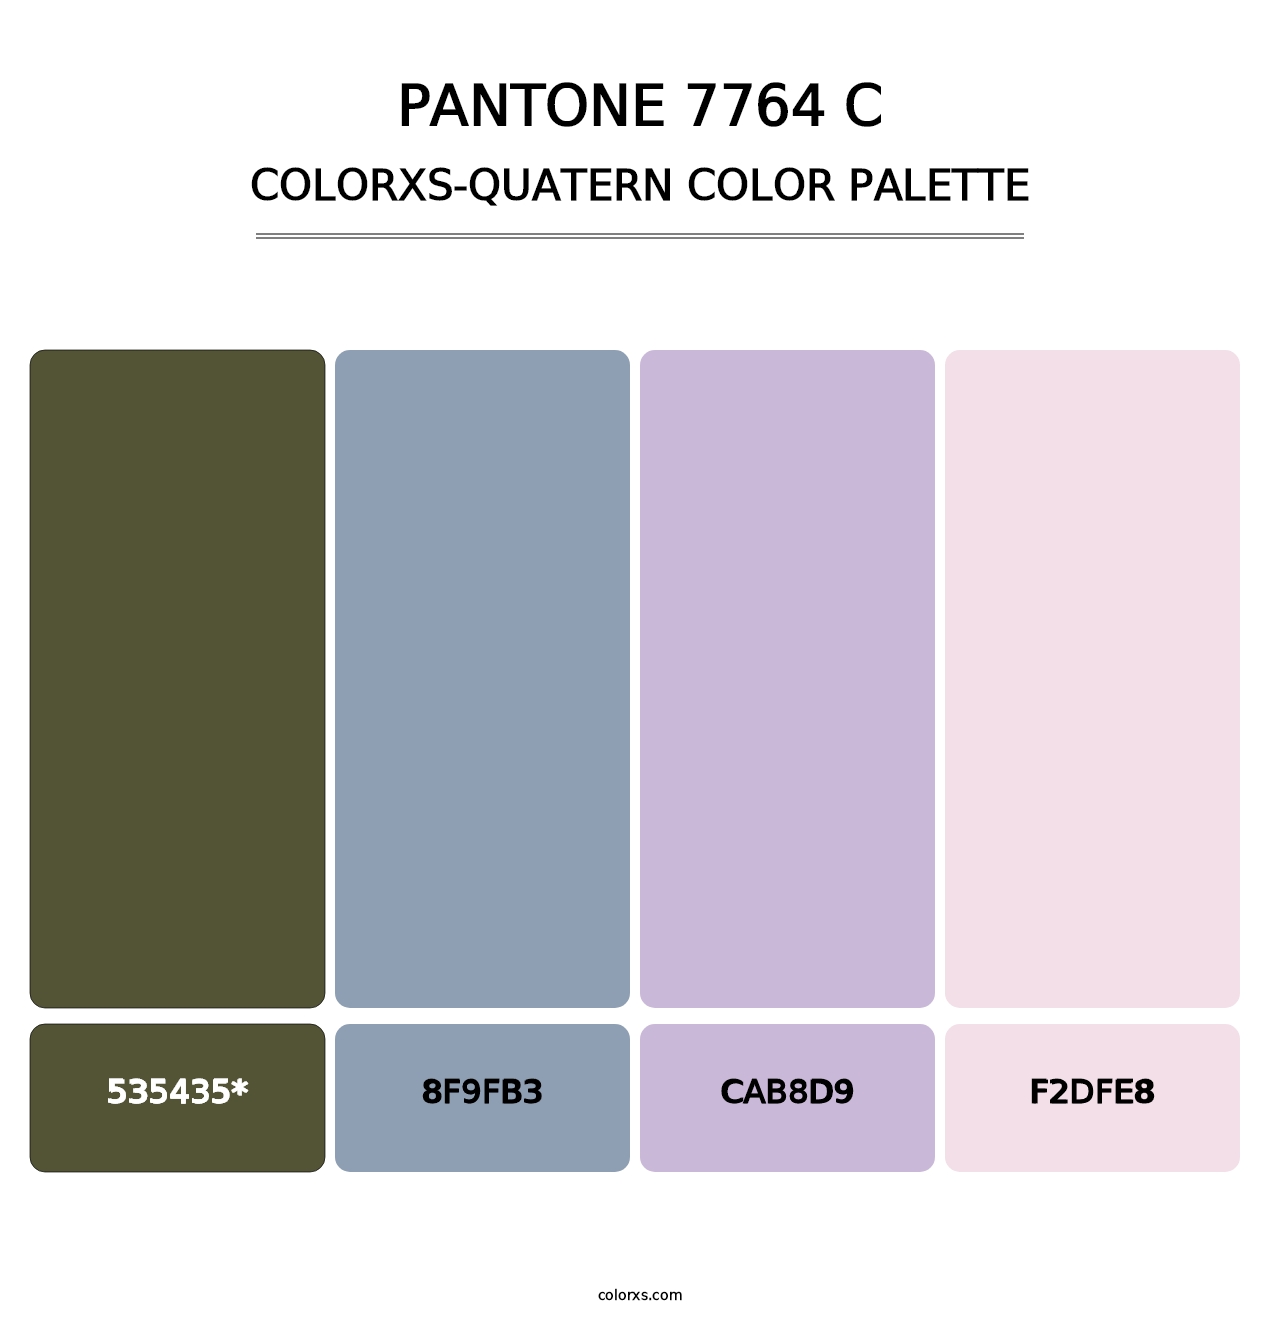 PANTONE 7764 C - Colorxs Quatern Palette